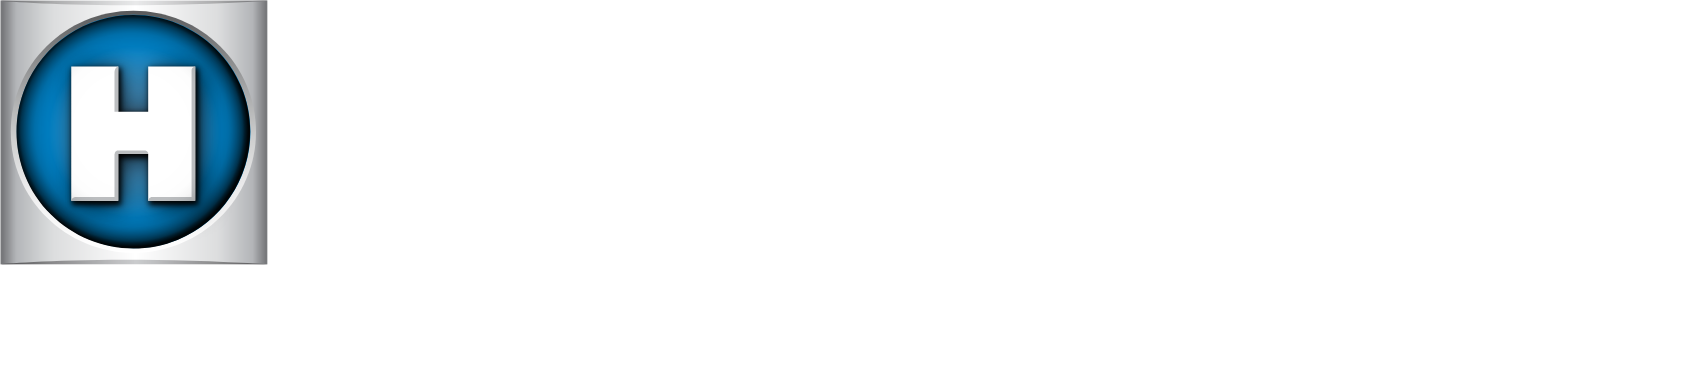 Hayward logo large for dark backgrounds (transparent PNG)